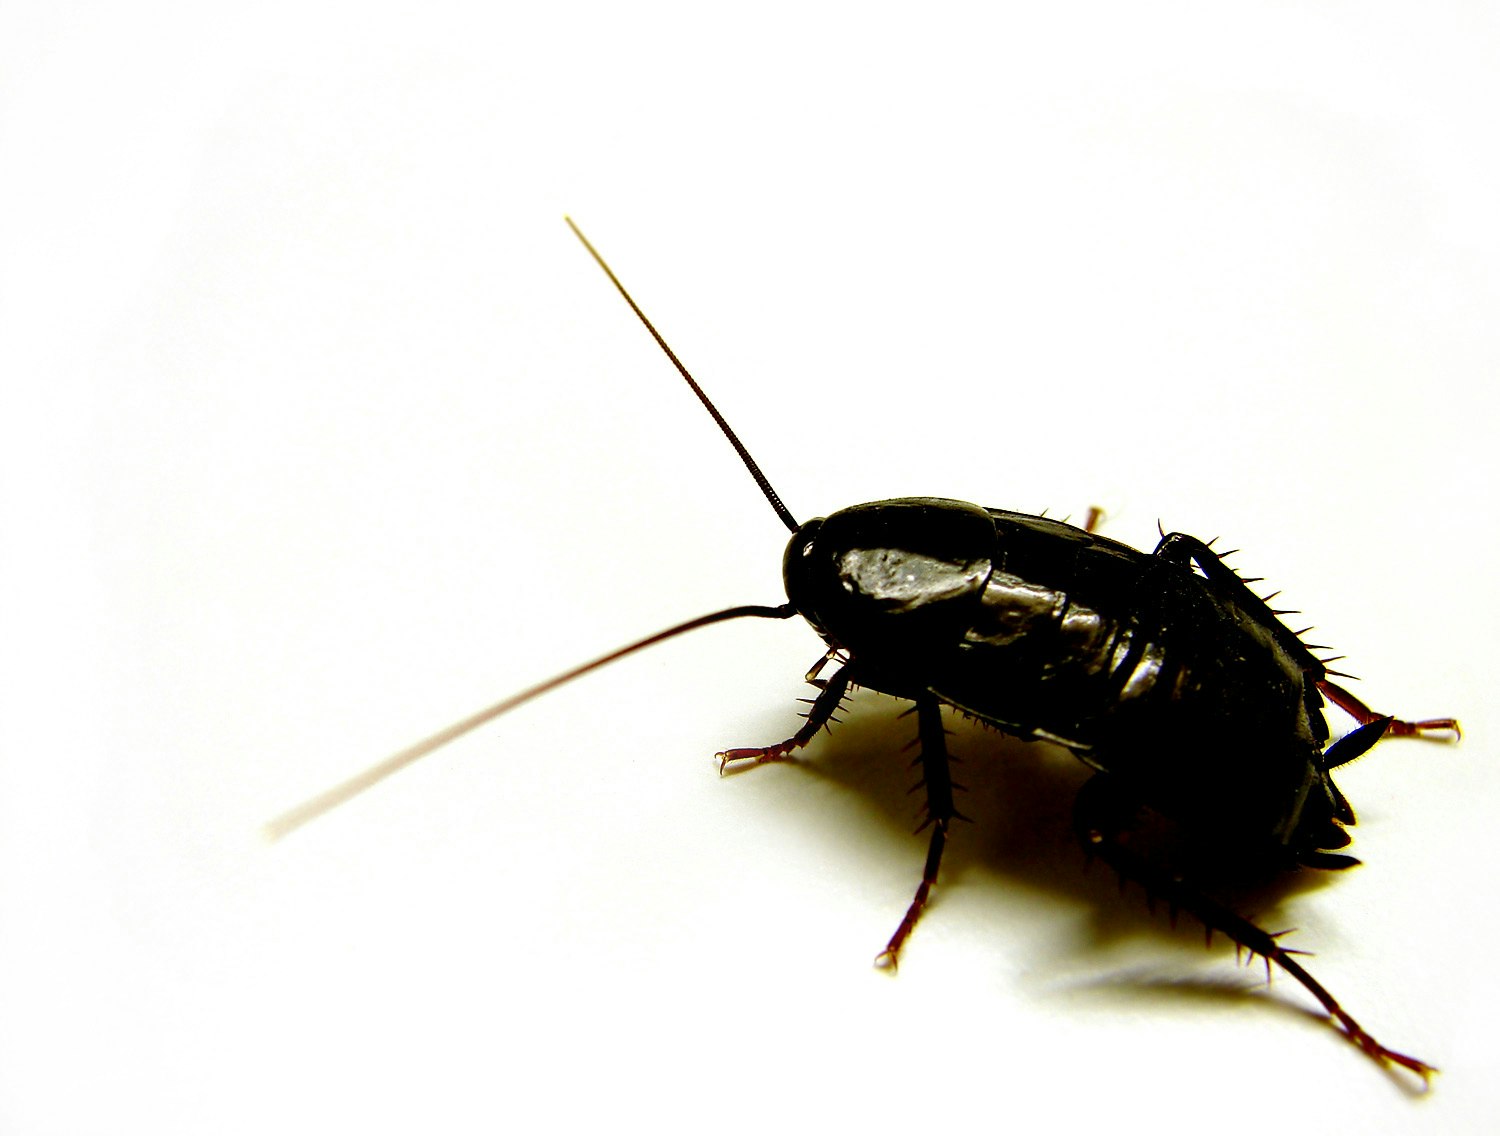 Oriental Roach